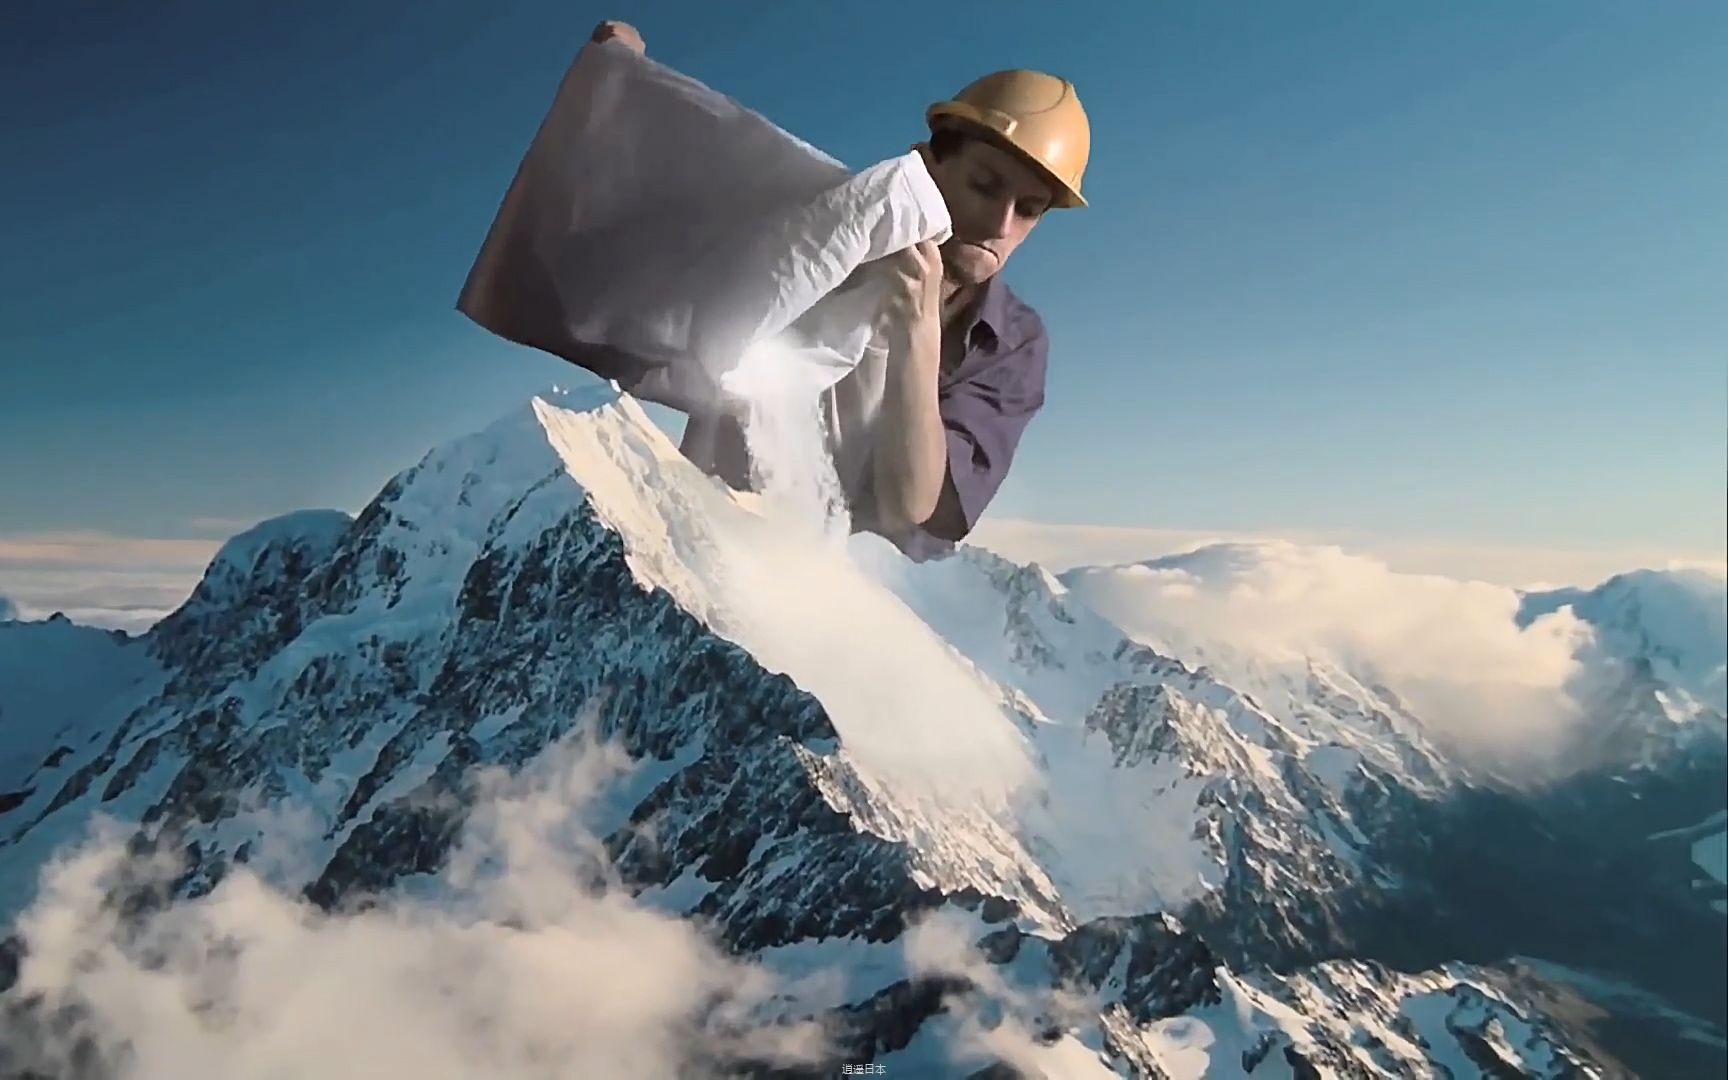 巨人往山上倒雪，人工制造出一座雪山，搞笑科幻短片《超级人类》-1.jpg